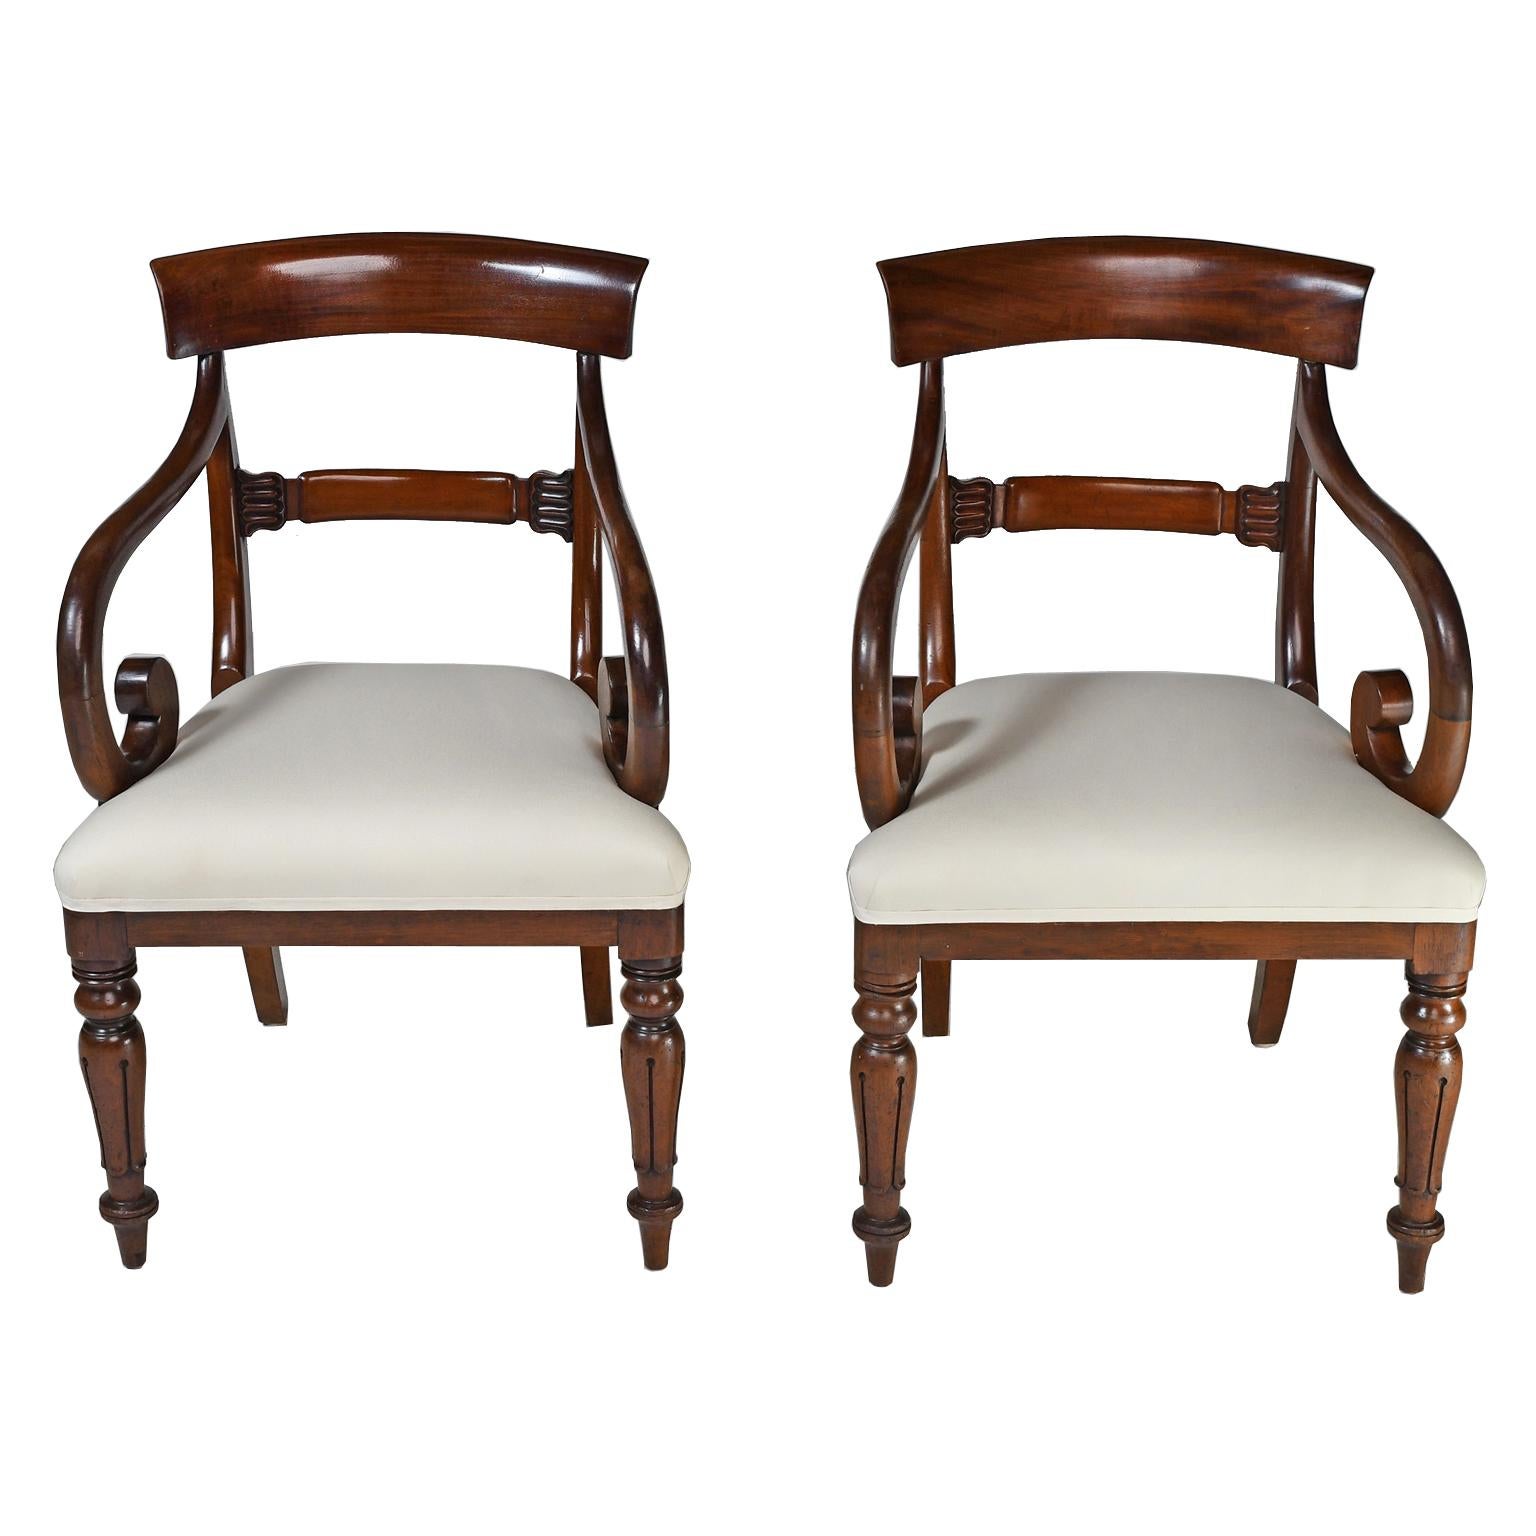 Ein außergewöhnlicher Satz von acht (8) englischen William IV Esszimmerstühlen aus Mahagoni, bestehend aus 2 Sesseln und 6 Seitenstühlen,  England, um 1835. Der Stuhl hat eine höhere Rückenlehne als für die damalige Zeit üblich, eine konkave obere